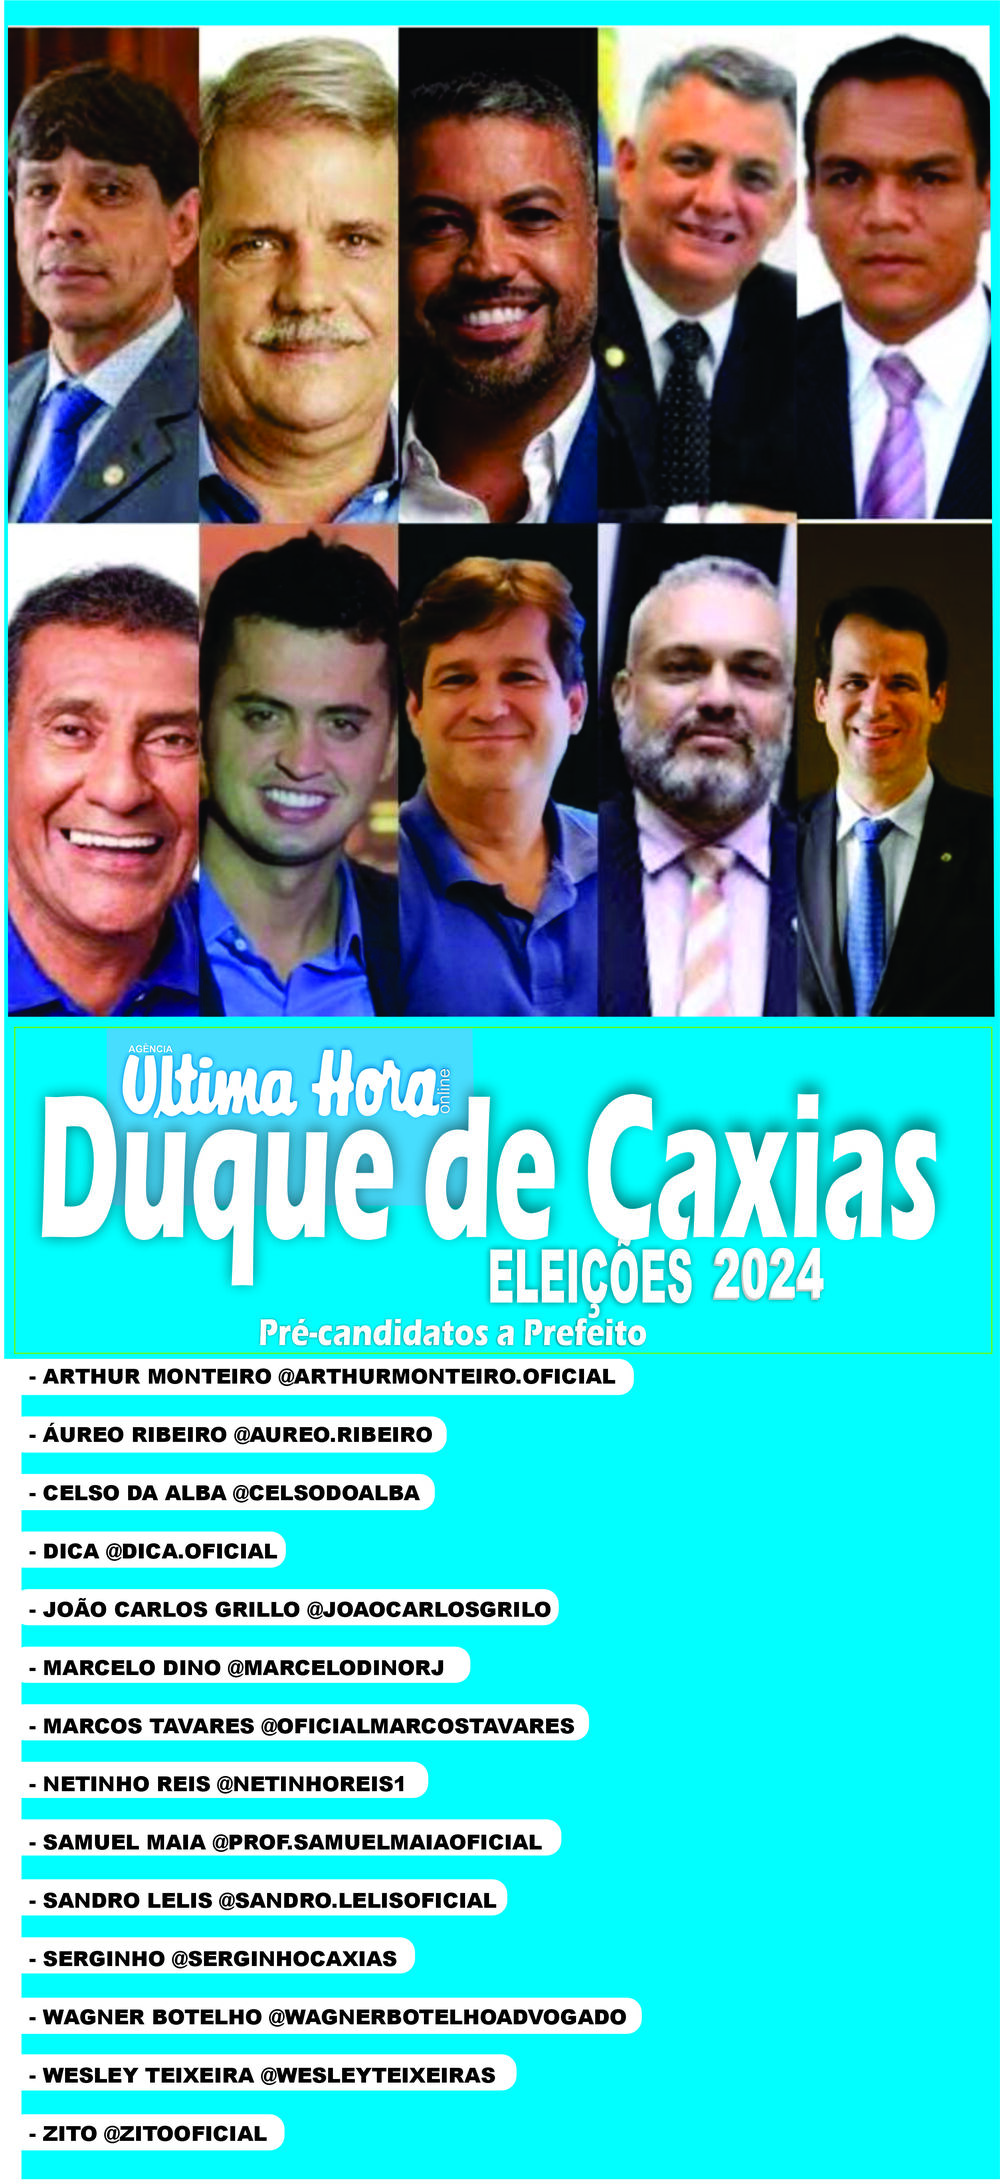 Veja o perfil dos principais pré-candidatos a prefeito de Duque de Caxias em 2024